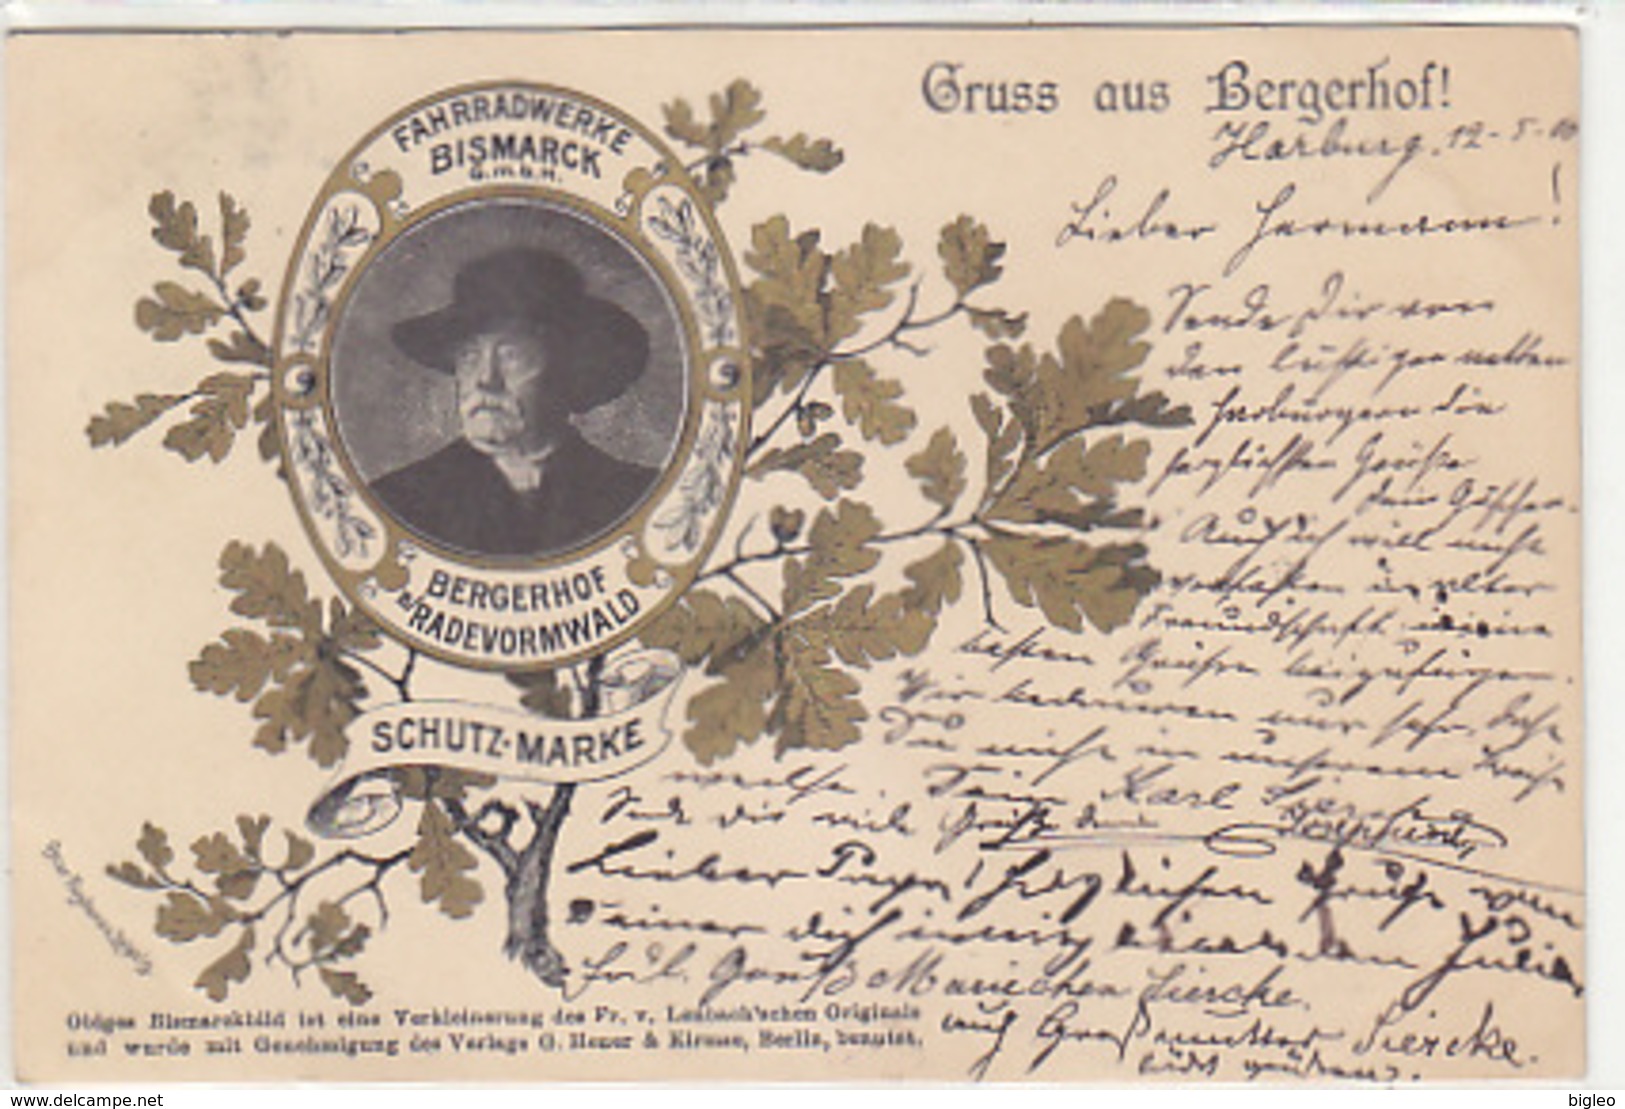 Gruss Aus Bergerhof - Fahrradwerke Bismarck GmbH - 1900    (A-92-180613) - Werbepostkarten